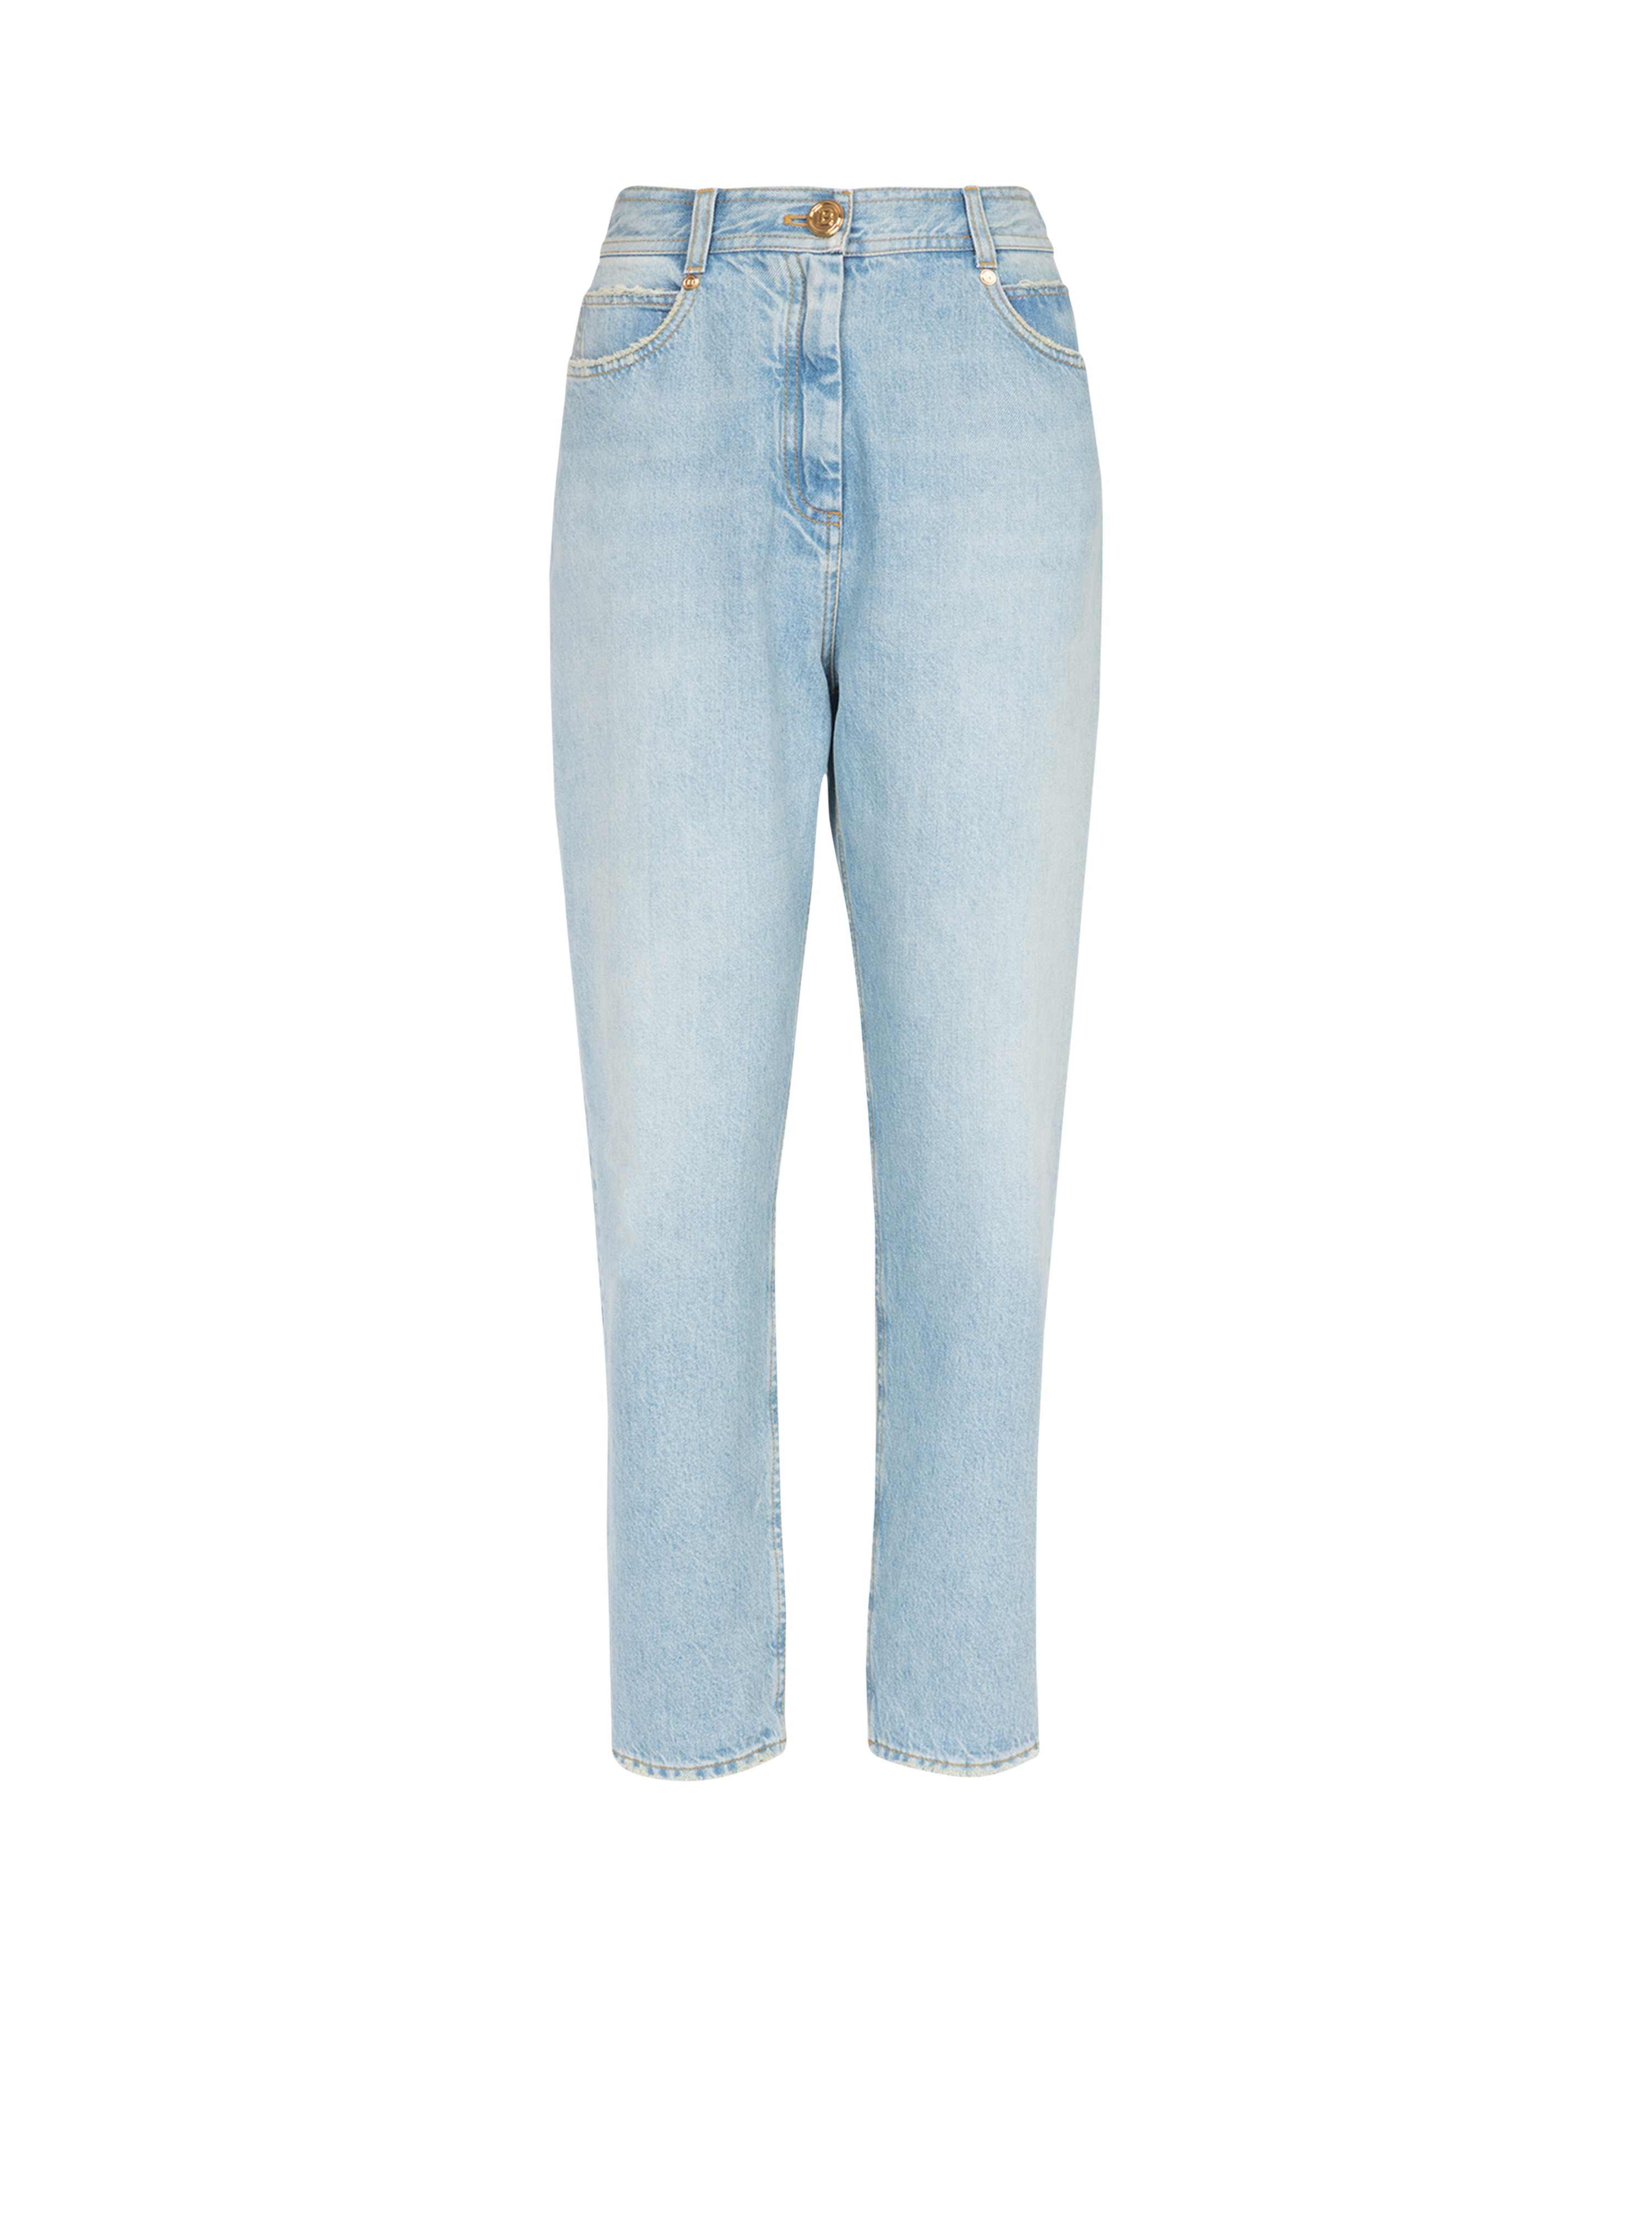 Boyfriend cut eco-designed jeans, blue